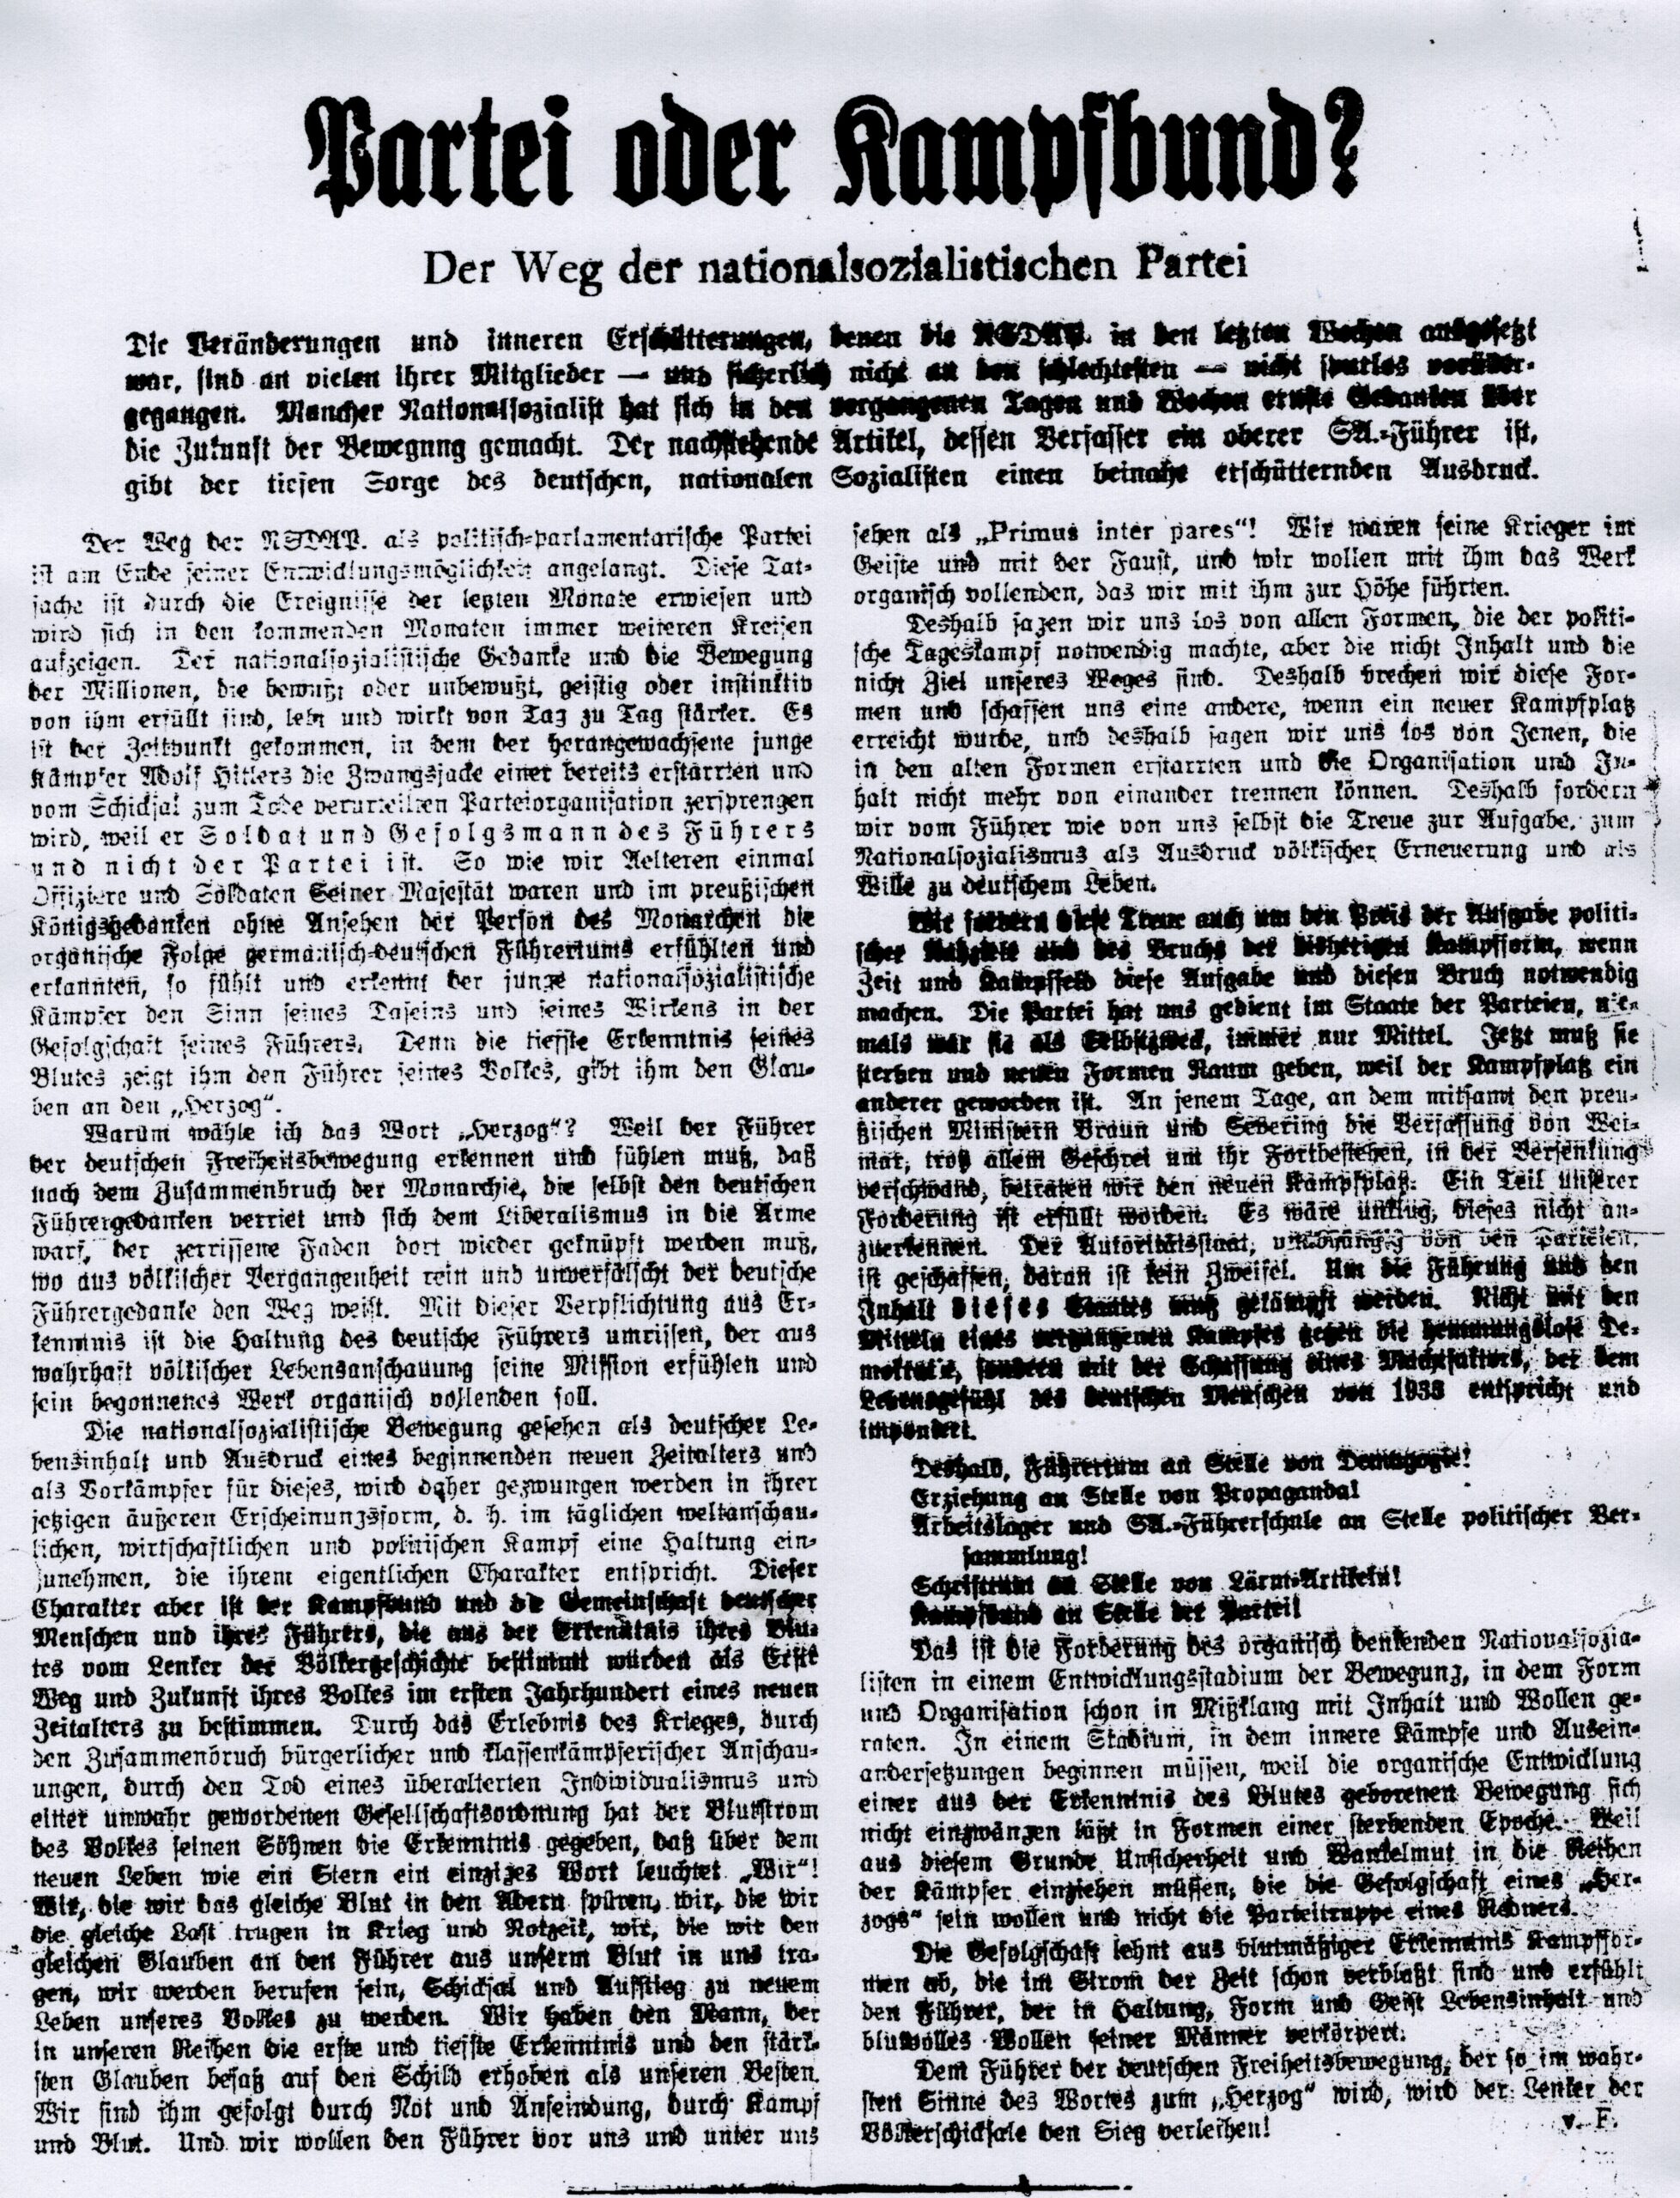  Zeitungsbeitrag, unterzeichnet mit v. F., 3.1.1933, Tägliche Rundschau 